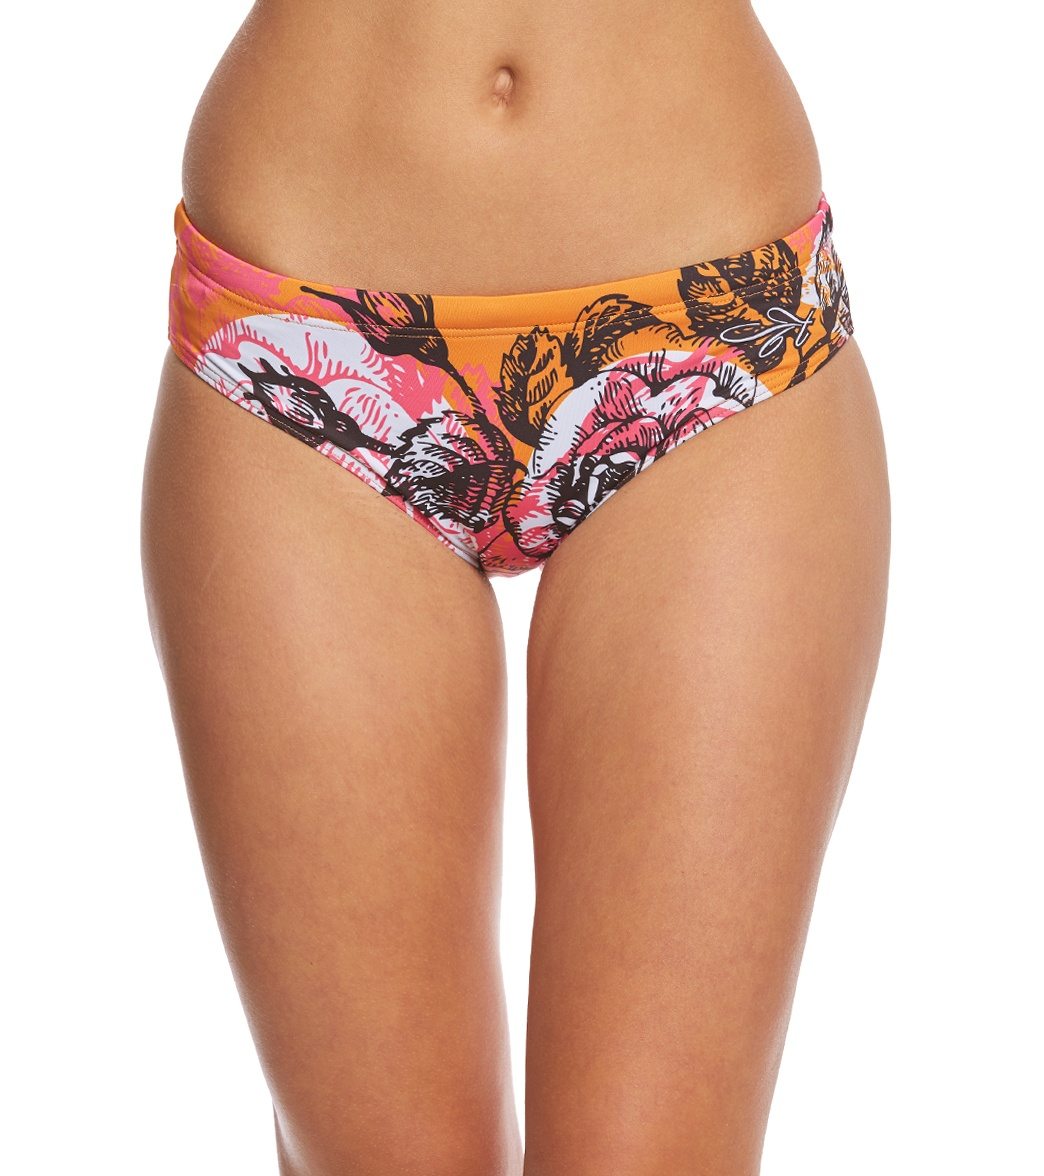 Triflare Women's Toile Bikini Bottom - Small Polyester - Swimoutlet.com